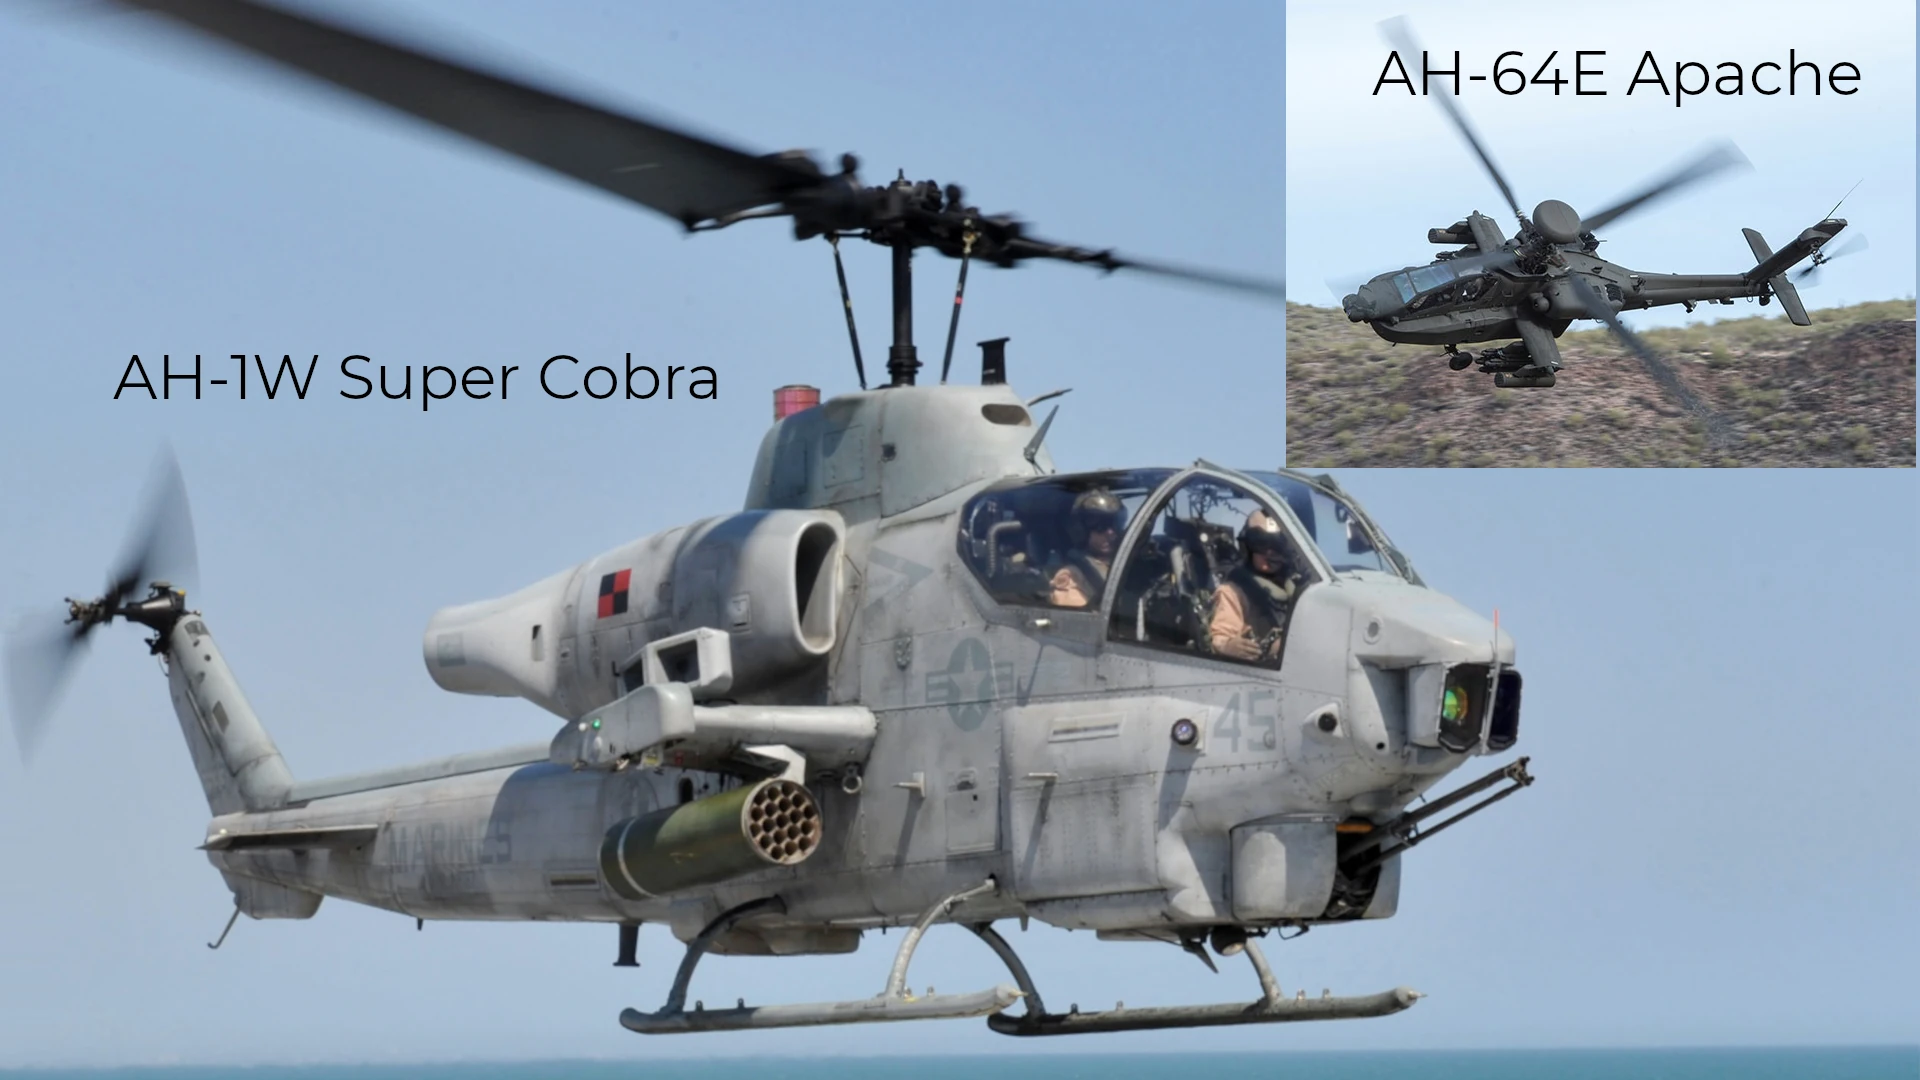 AH-1Z Viper and AH-64E Apache